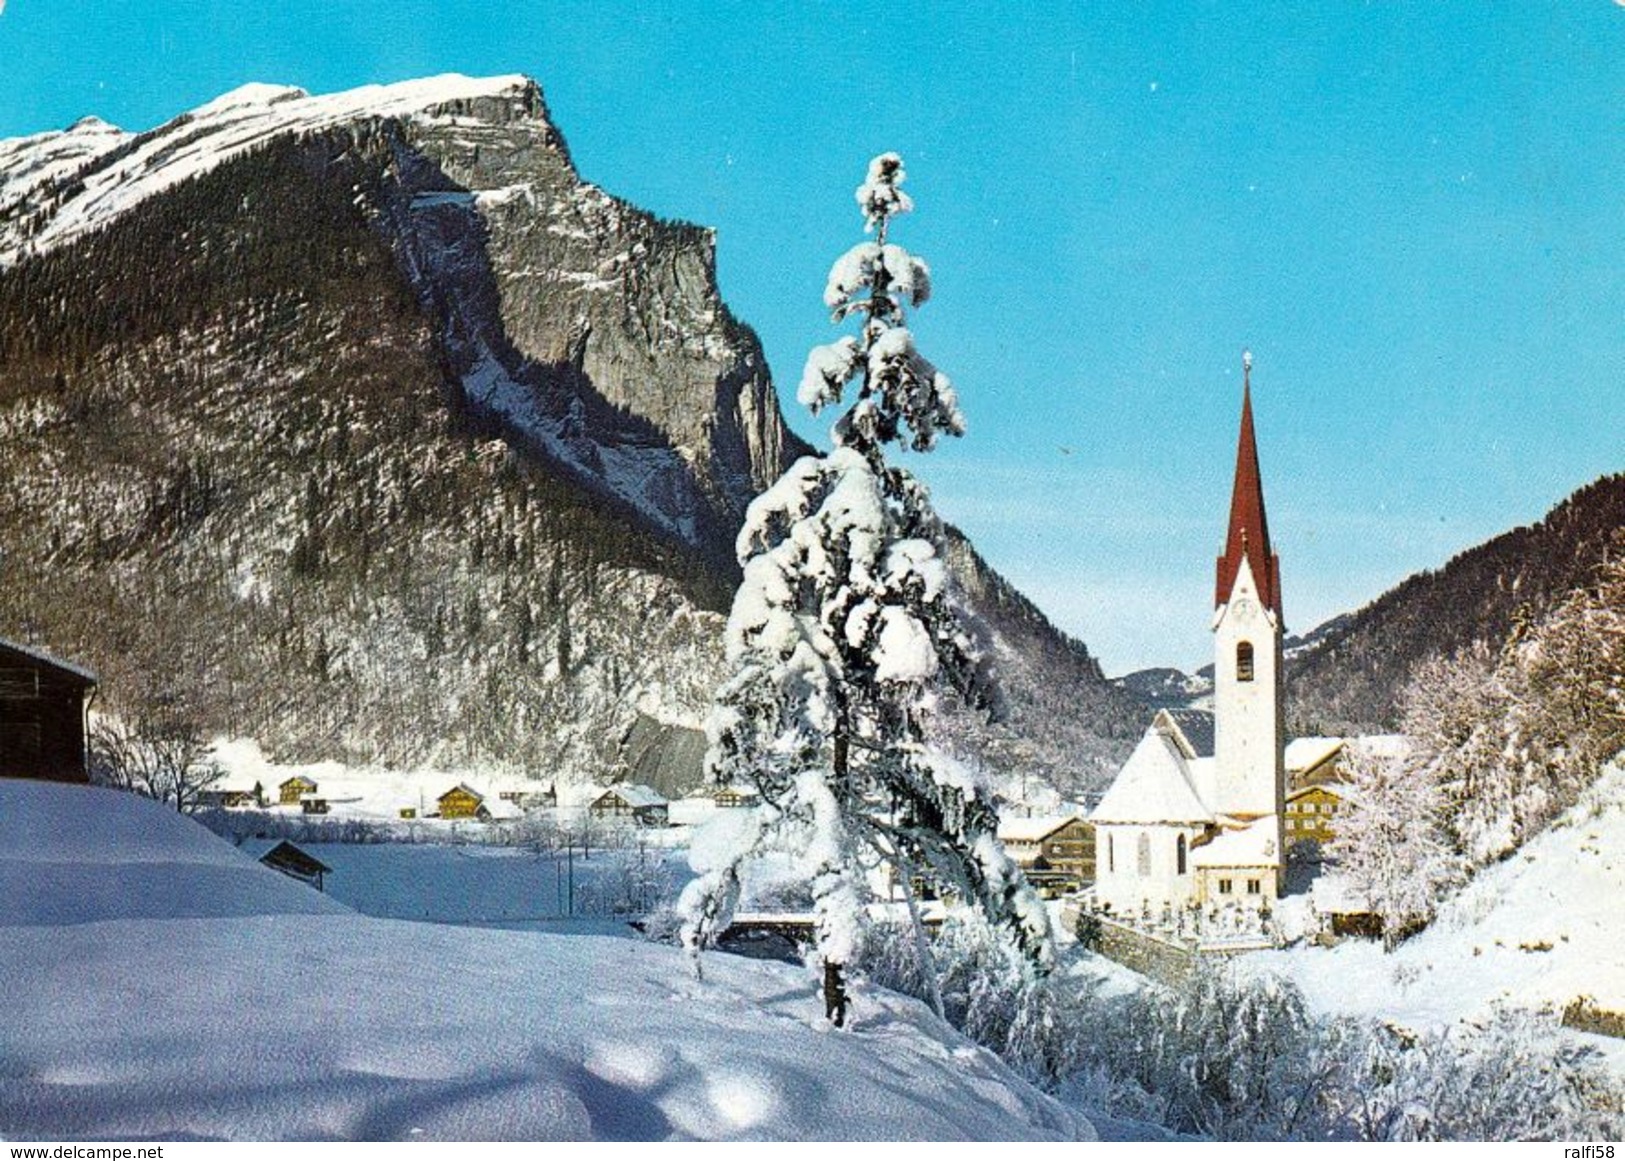 1 AK Österreich Vorarlberg * Pfarrkirche St. Leonhard In Au - Erbaut Um 1390 - Ein Bregenzerwaldort * - Bregenzerwaldorte